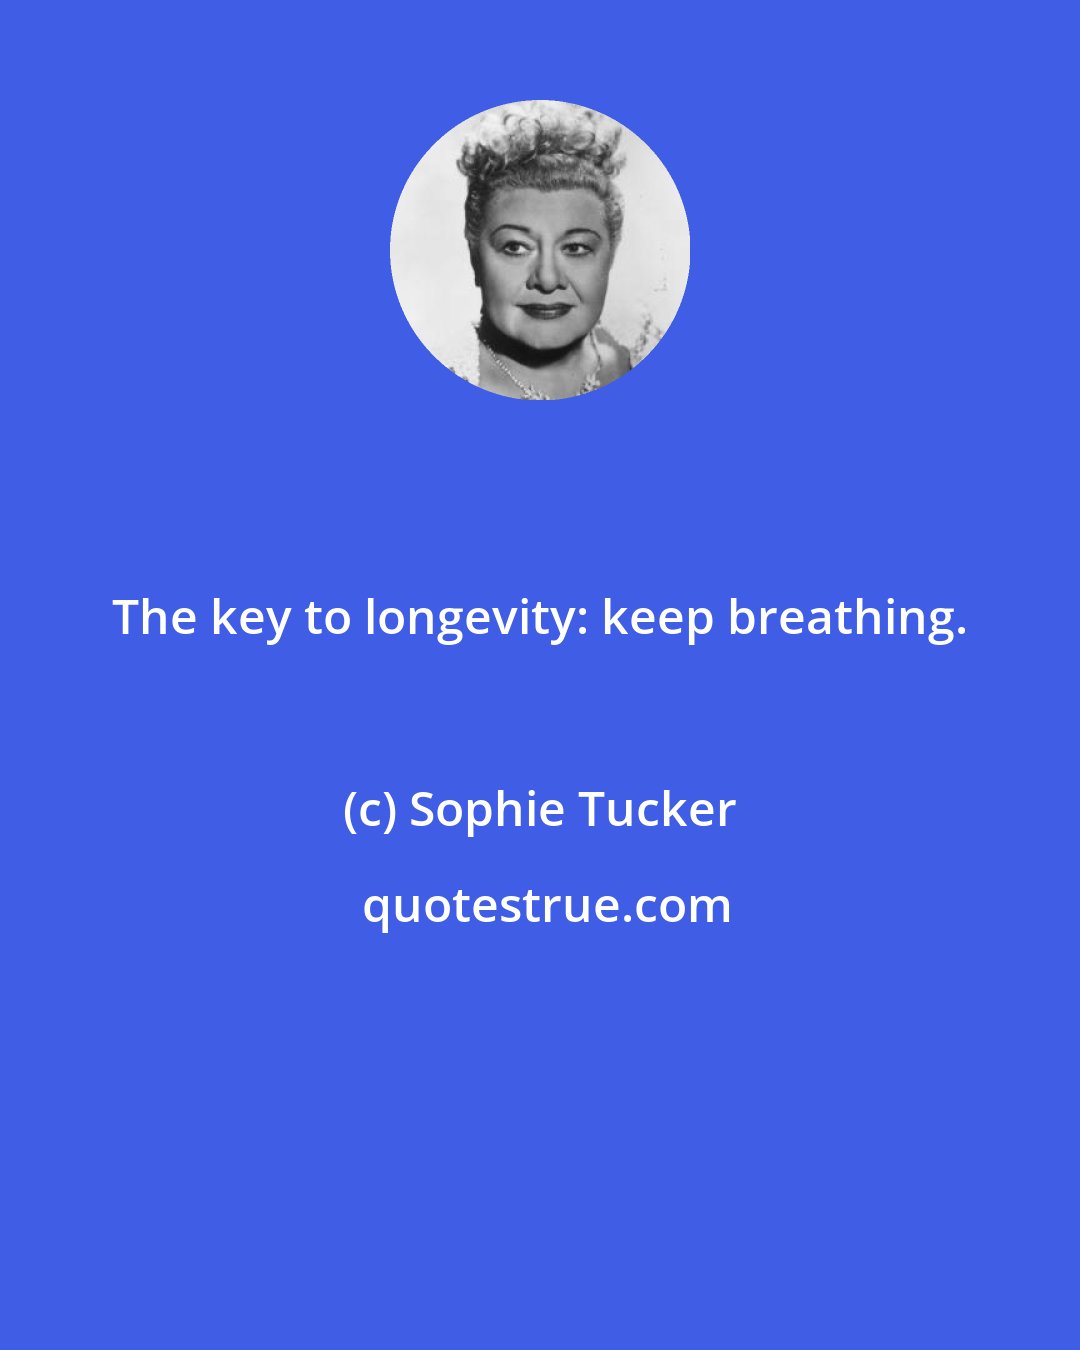 Sophie Tucker: The key to longevity: keep breathing.